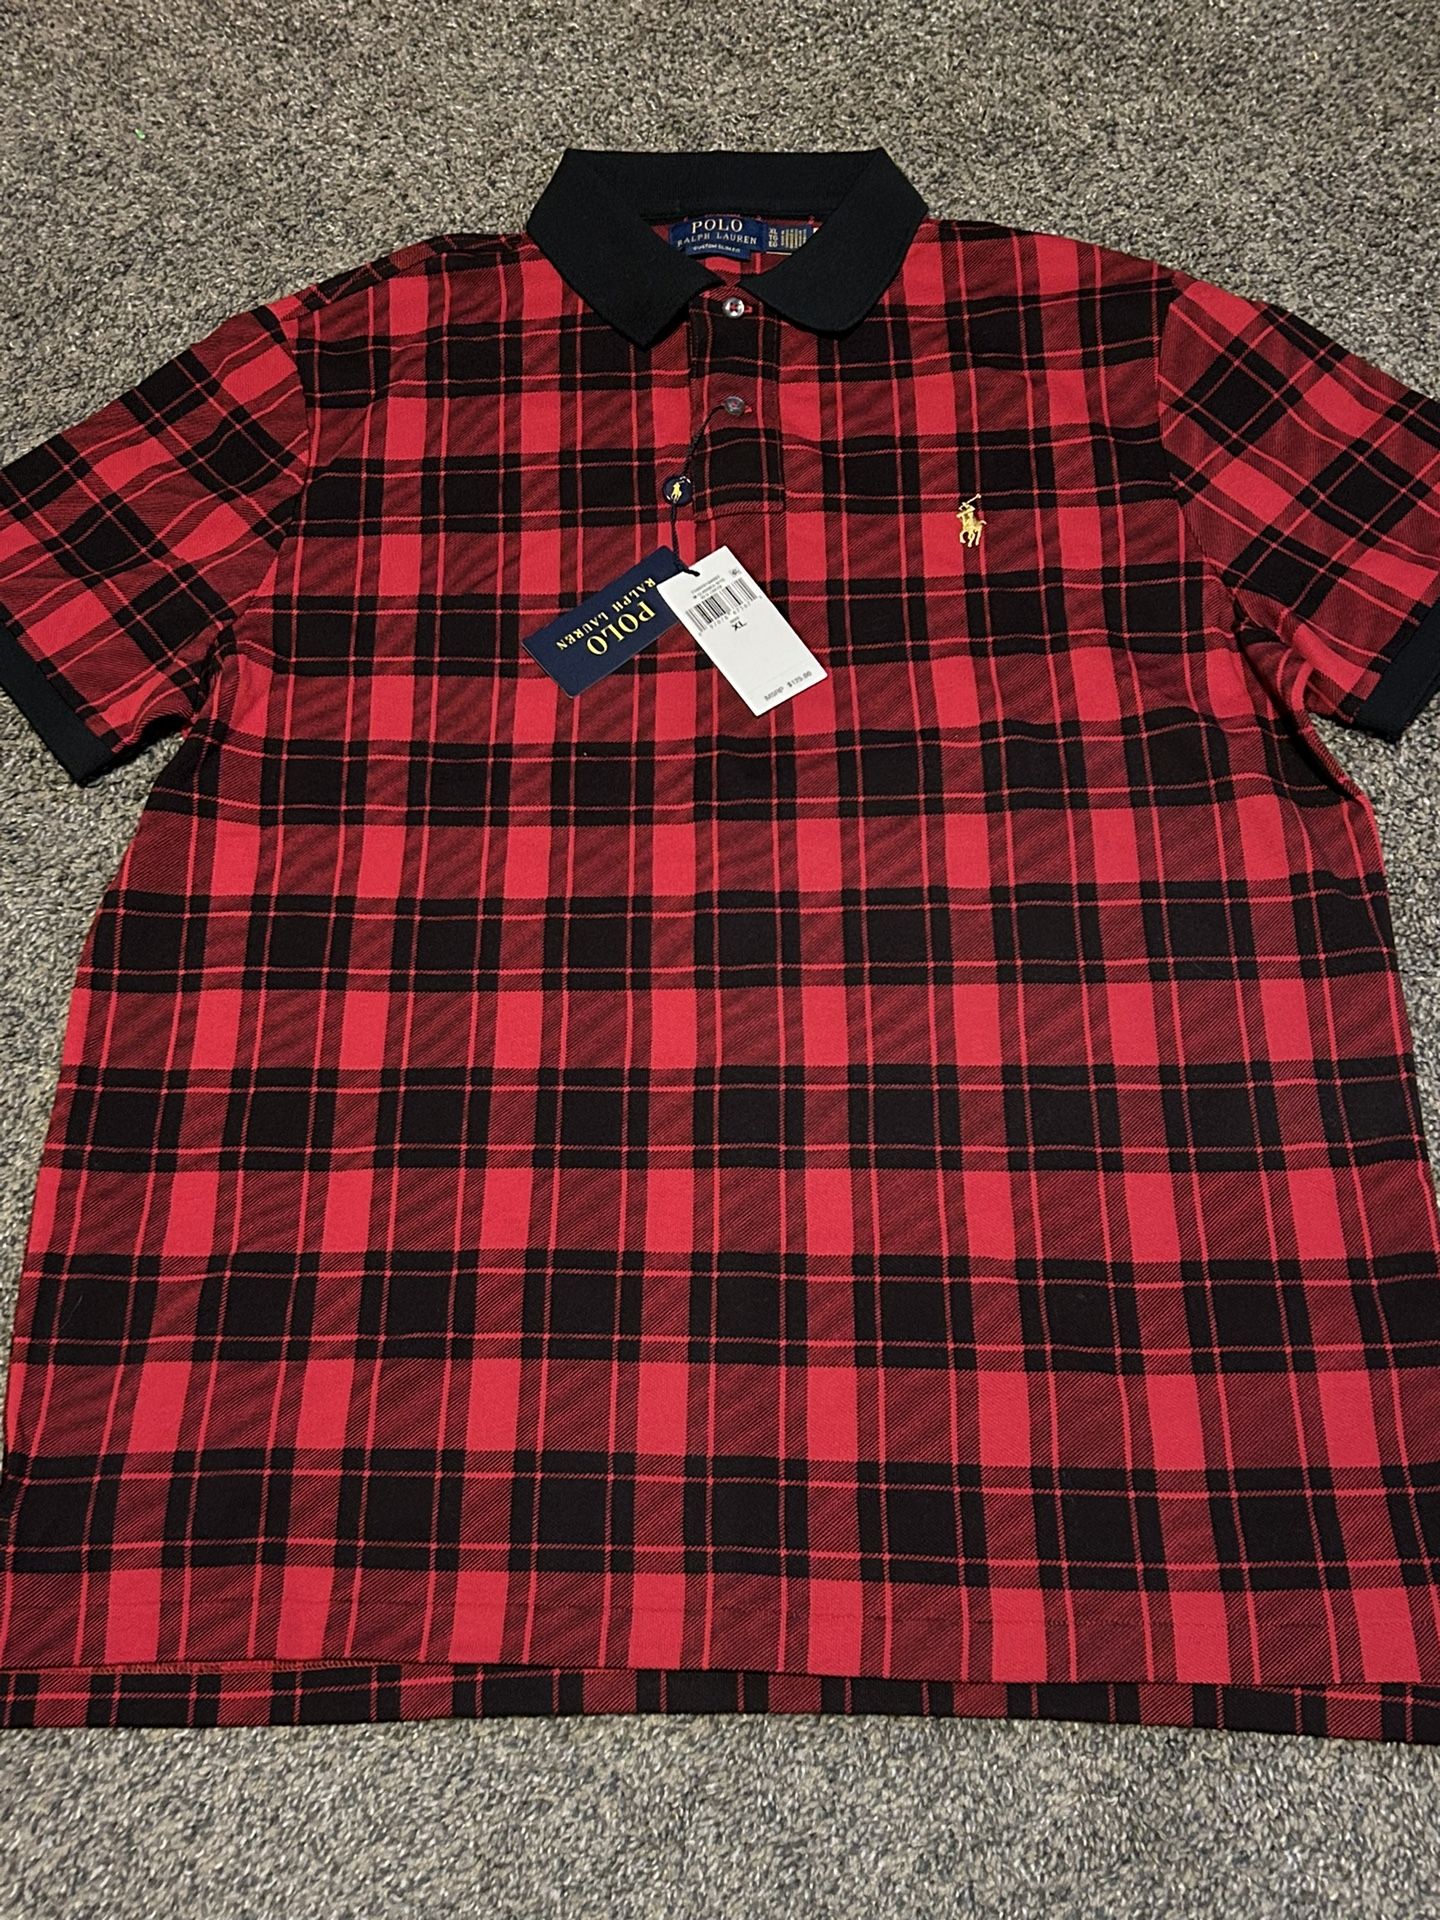 Ralph Lauren Red & Black Polo Shirt (Men’s XL)